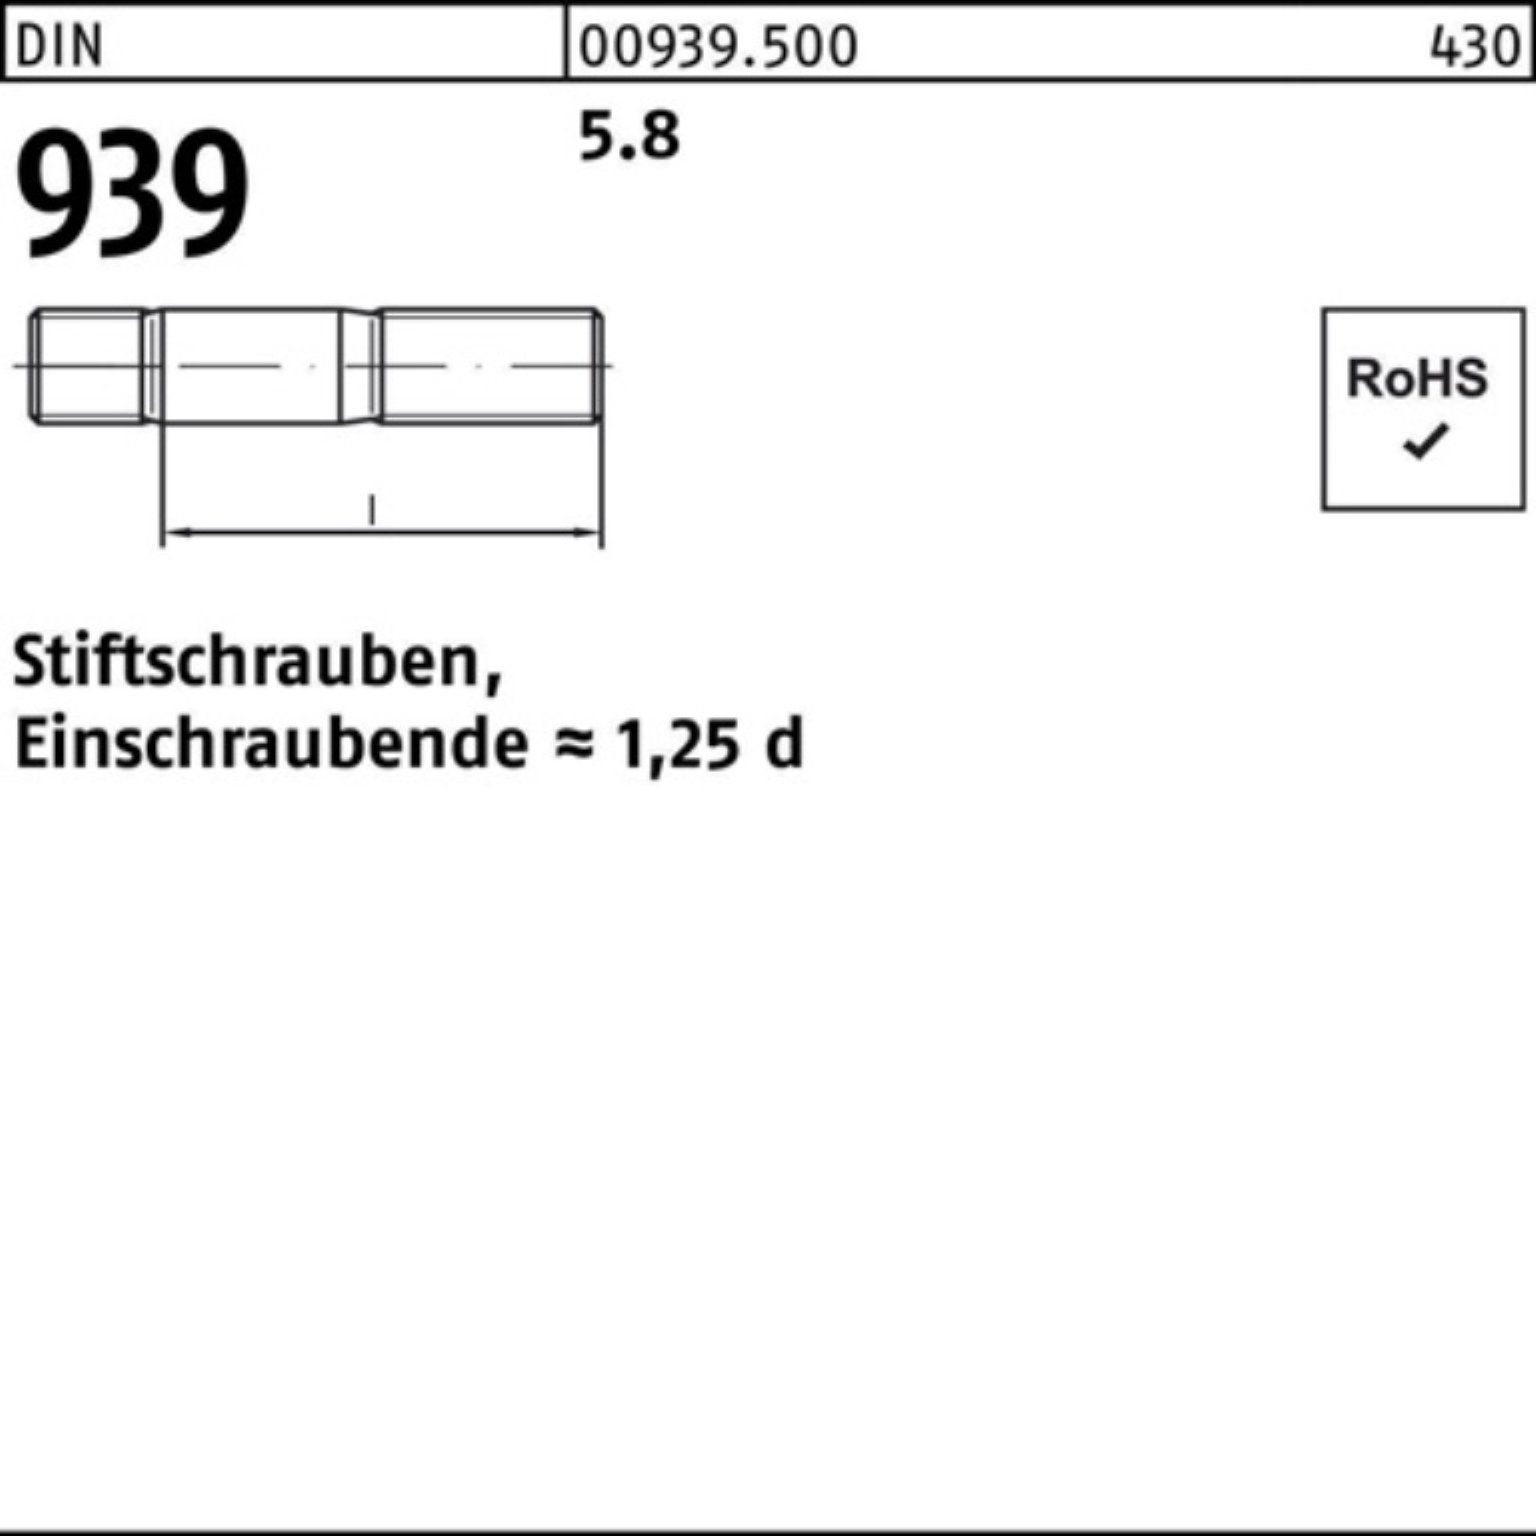 5.8 Pack 939 M24x Stiftschraube DIN S 100er Reyher Einschraubende=1,25d 70 Stiftschraube 10